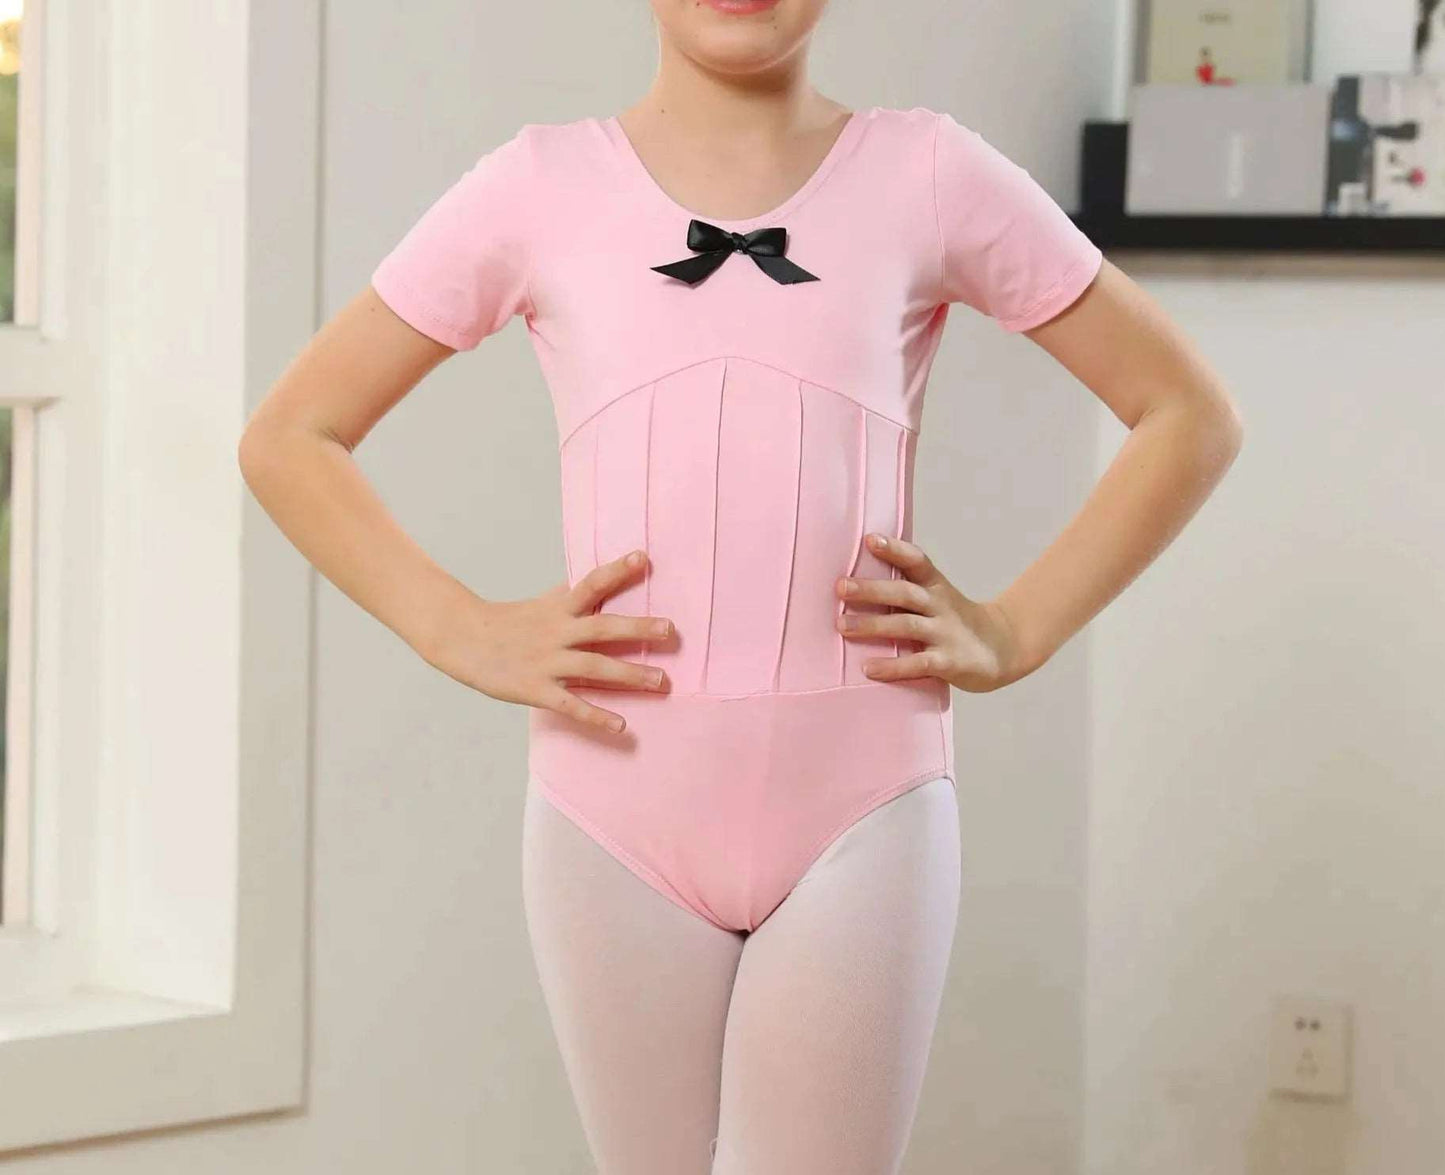 Vorderseite des rosafarbenen, kurzärmligen Ballett-Trikots für Mädchen mit Schleife vorne